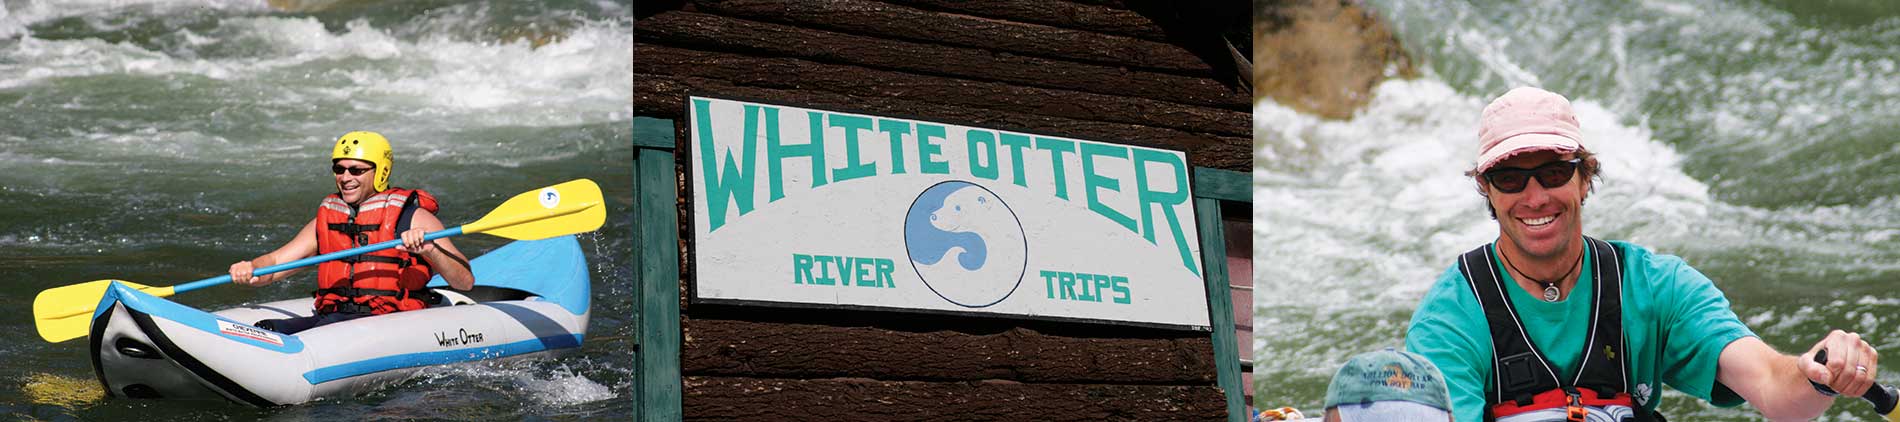 White Otter Equipment Rentals